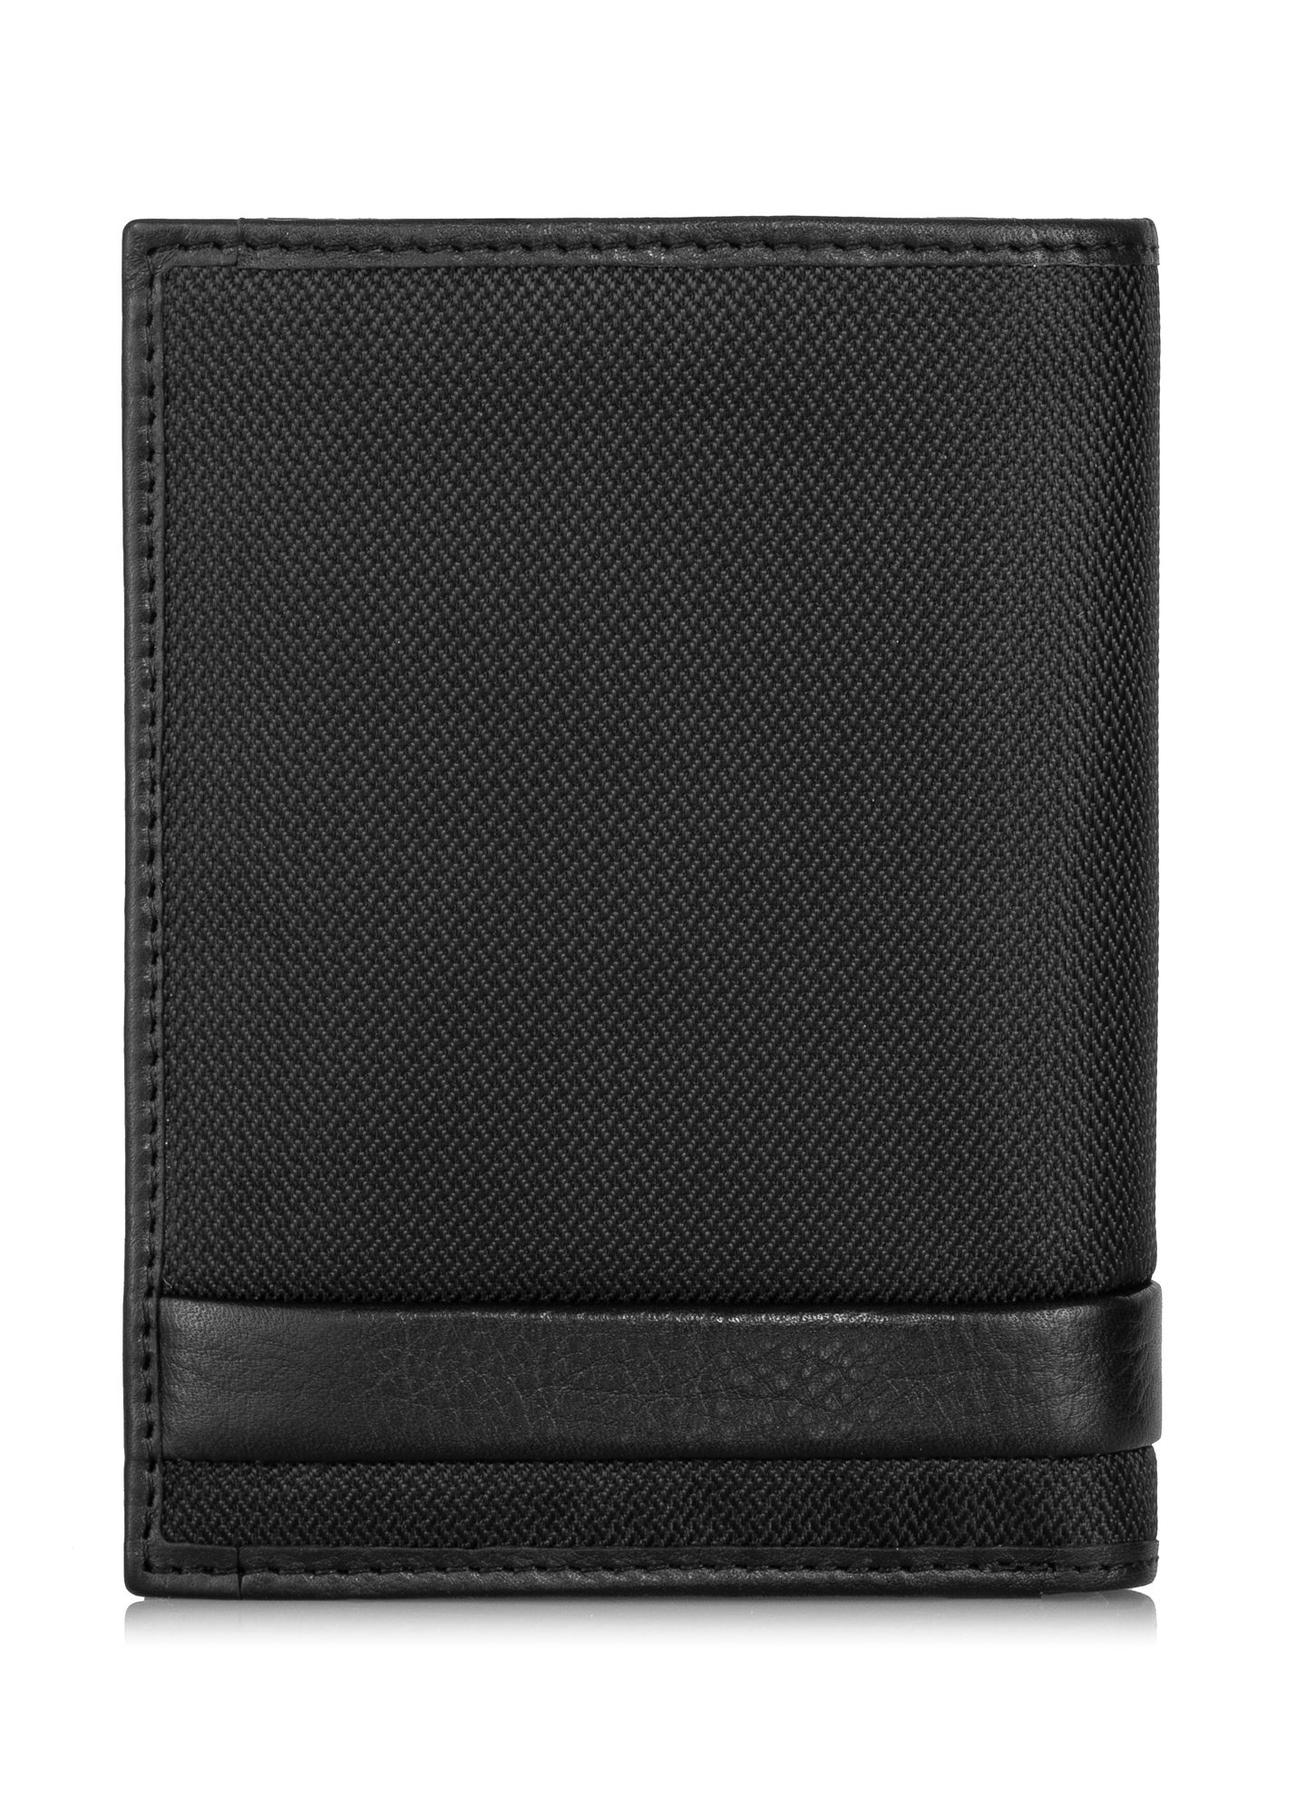 Czarny rozkładany portfel męski PORMN-0019-99(Z23)